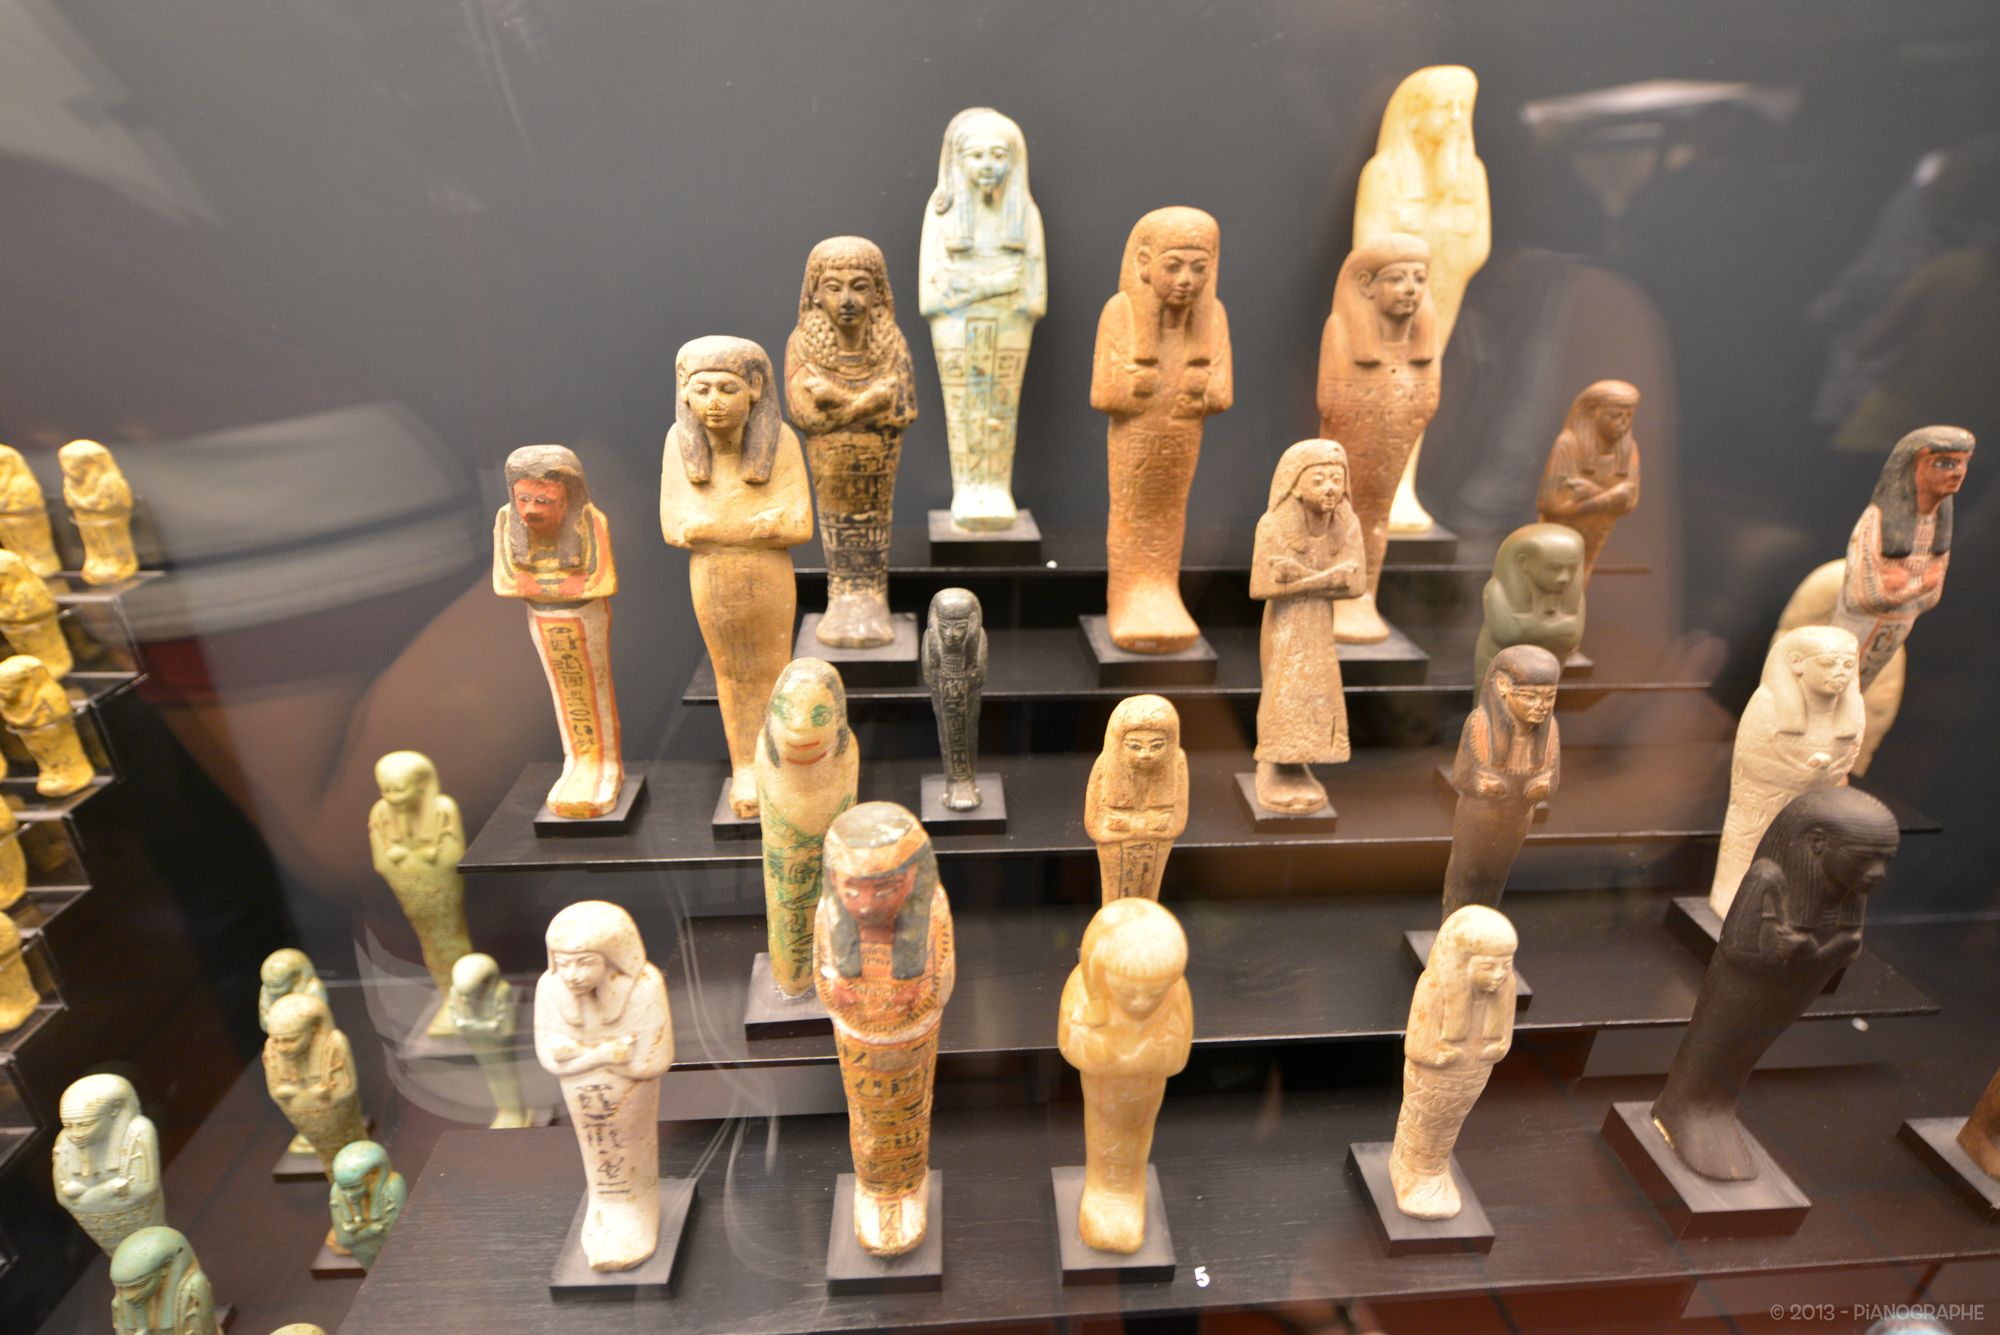 Statuettes à l'effigie de pharaons, sur des étagères de métal, dans une vitrine du Musée Grégorien Egyptien (Vatican)